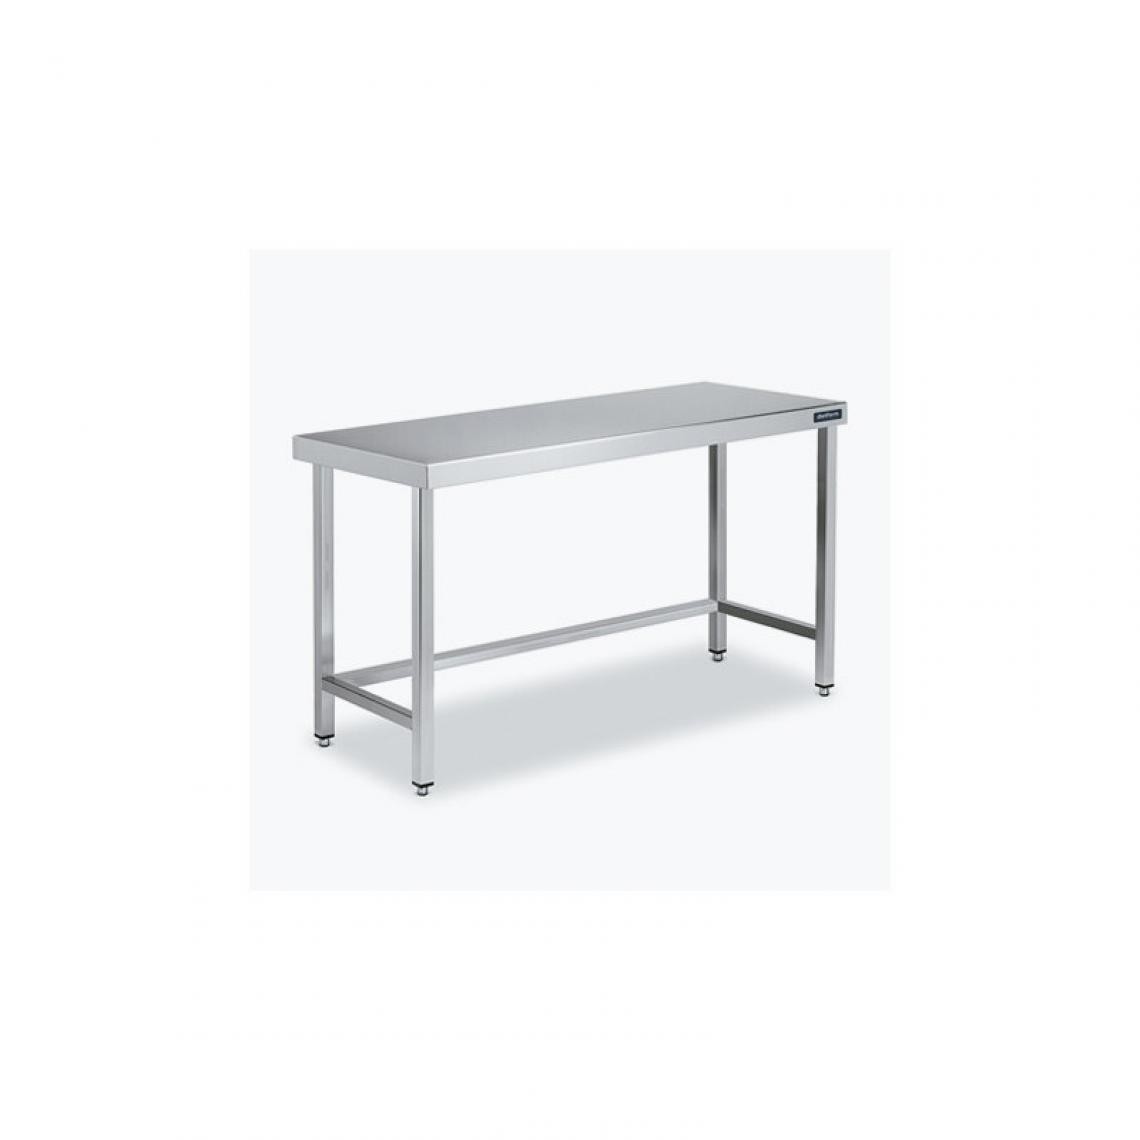 DISTFORM - Table Centrale 600x900 avec Renforts - Distform - Inox 18/10700x900x850mm - Tables à manger